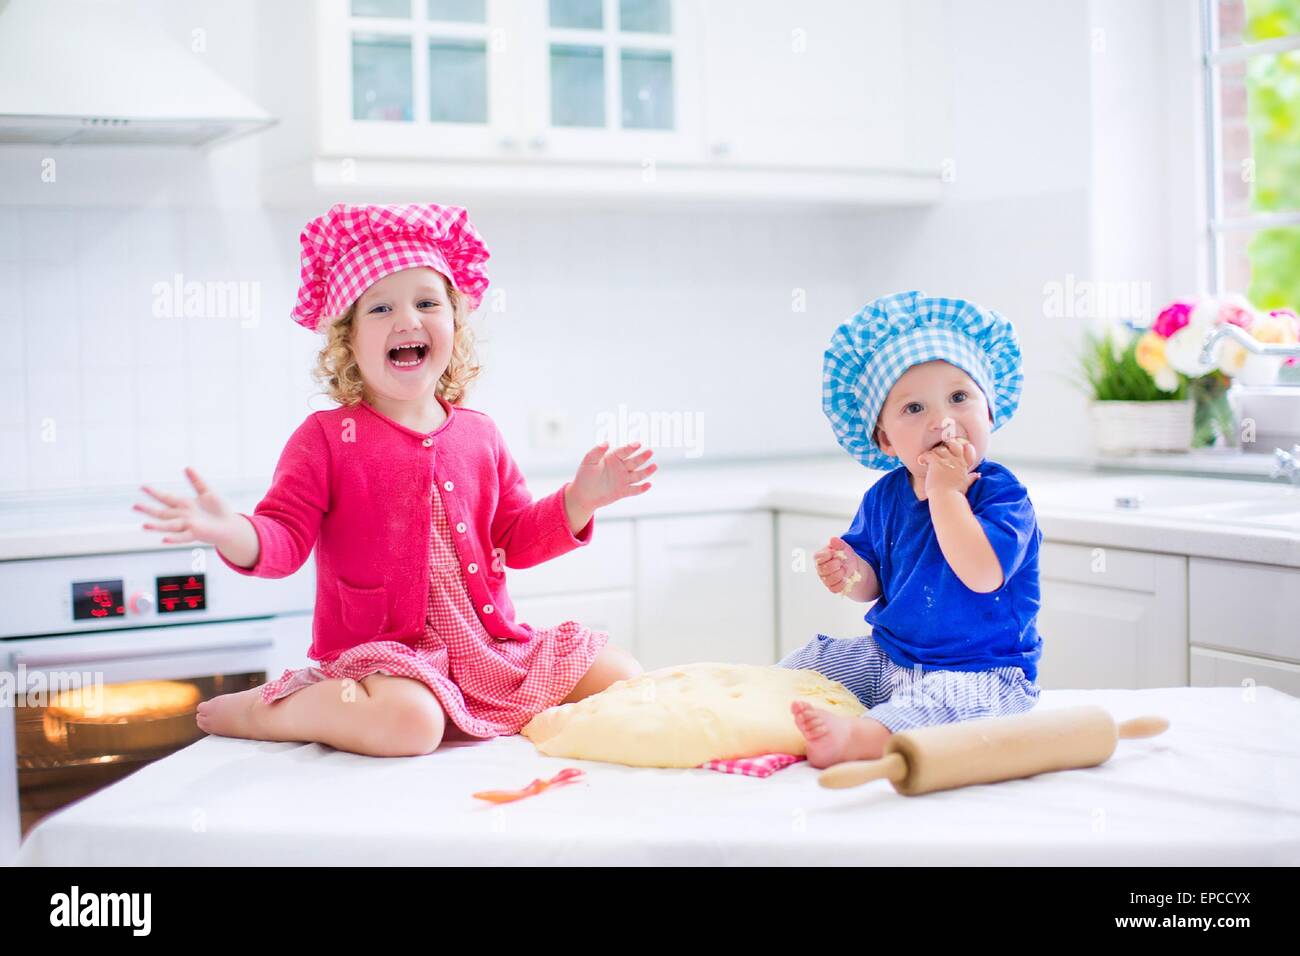 Enfants mignon, adorable petite fille et funny baby boy wearing rose et bleu de chef de jouer avec la pâte à tarte à la cuisson d'une cuisine Banque D'Images